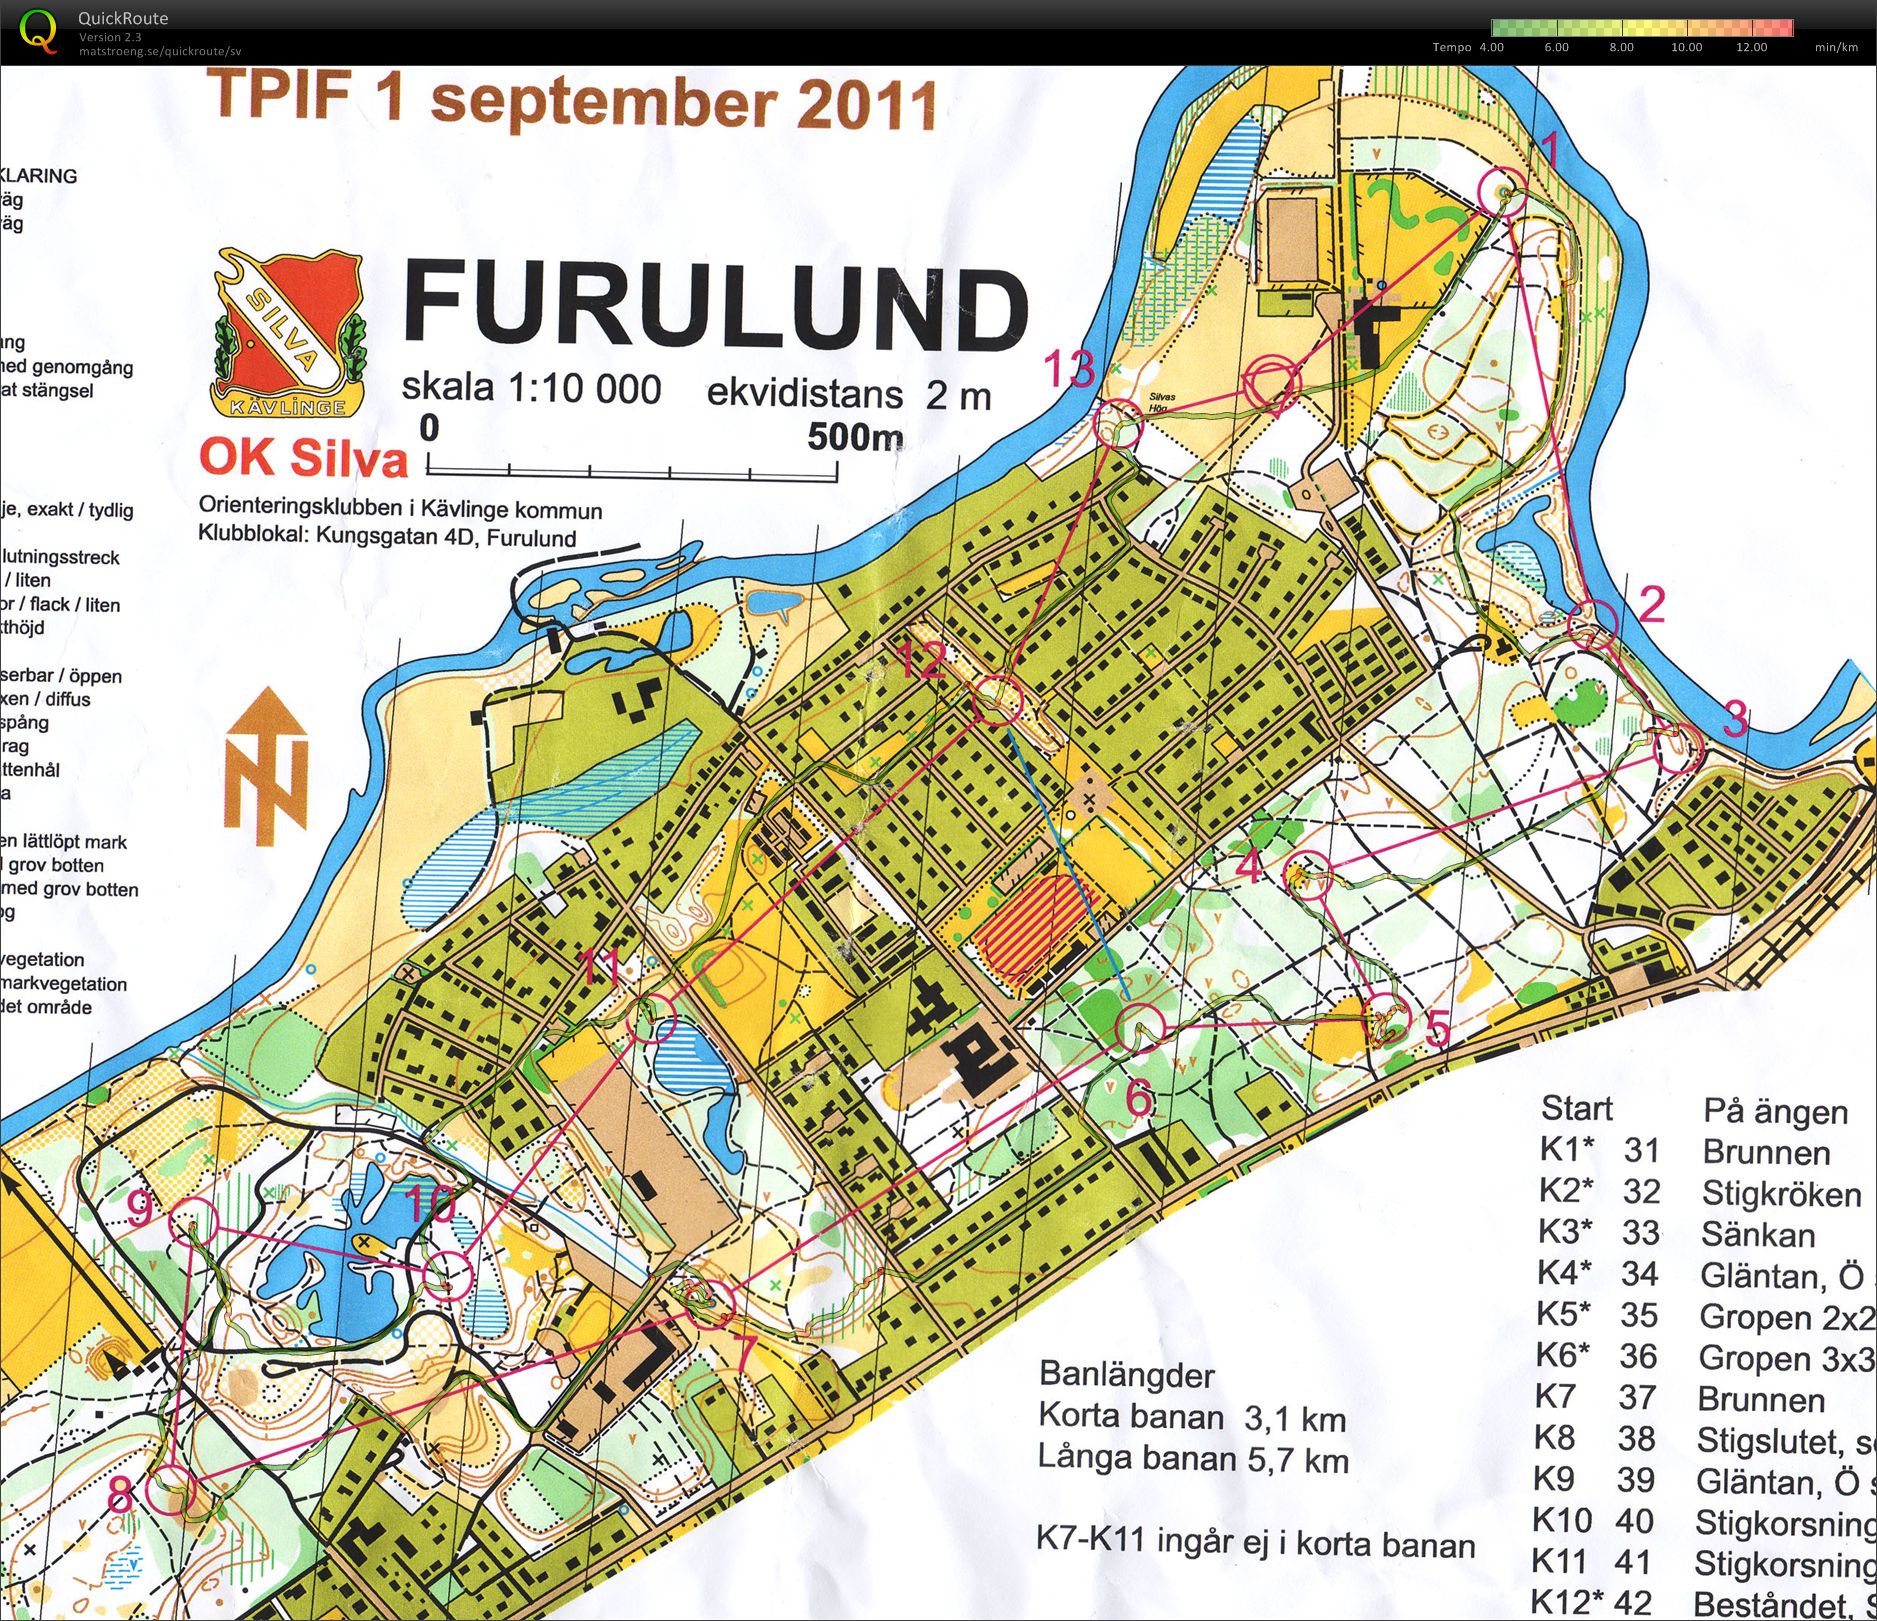 TetraPak OL Furulund (31/08/2011)